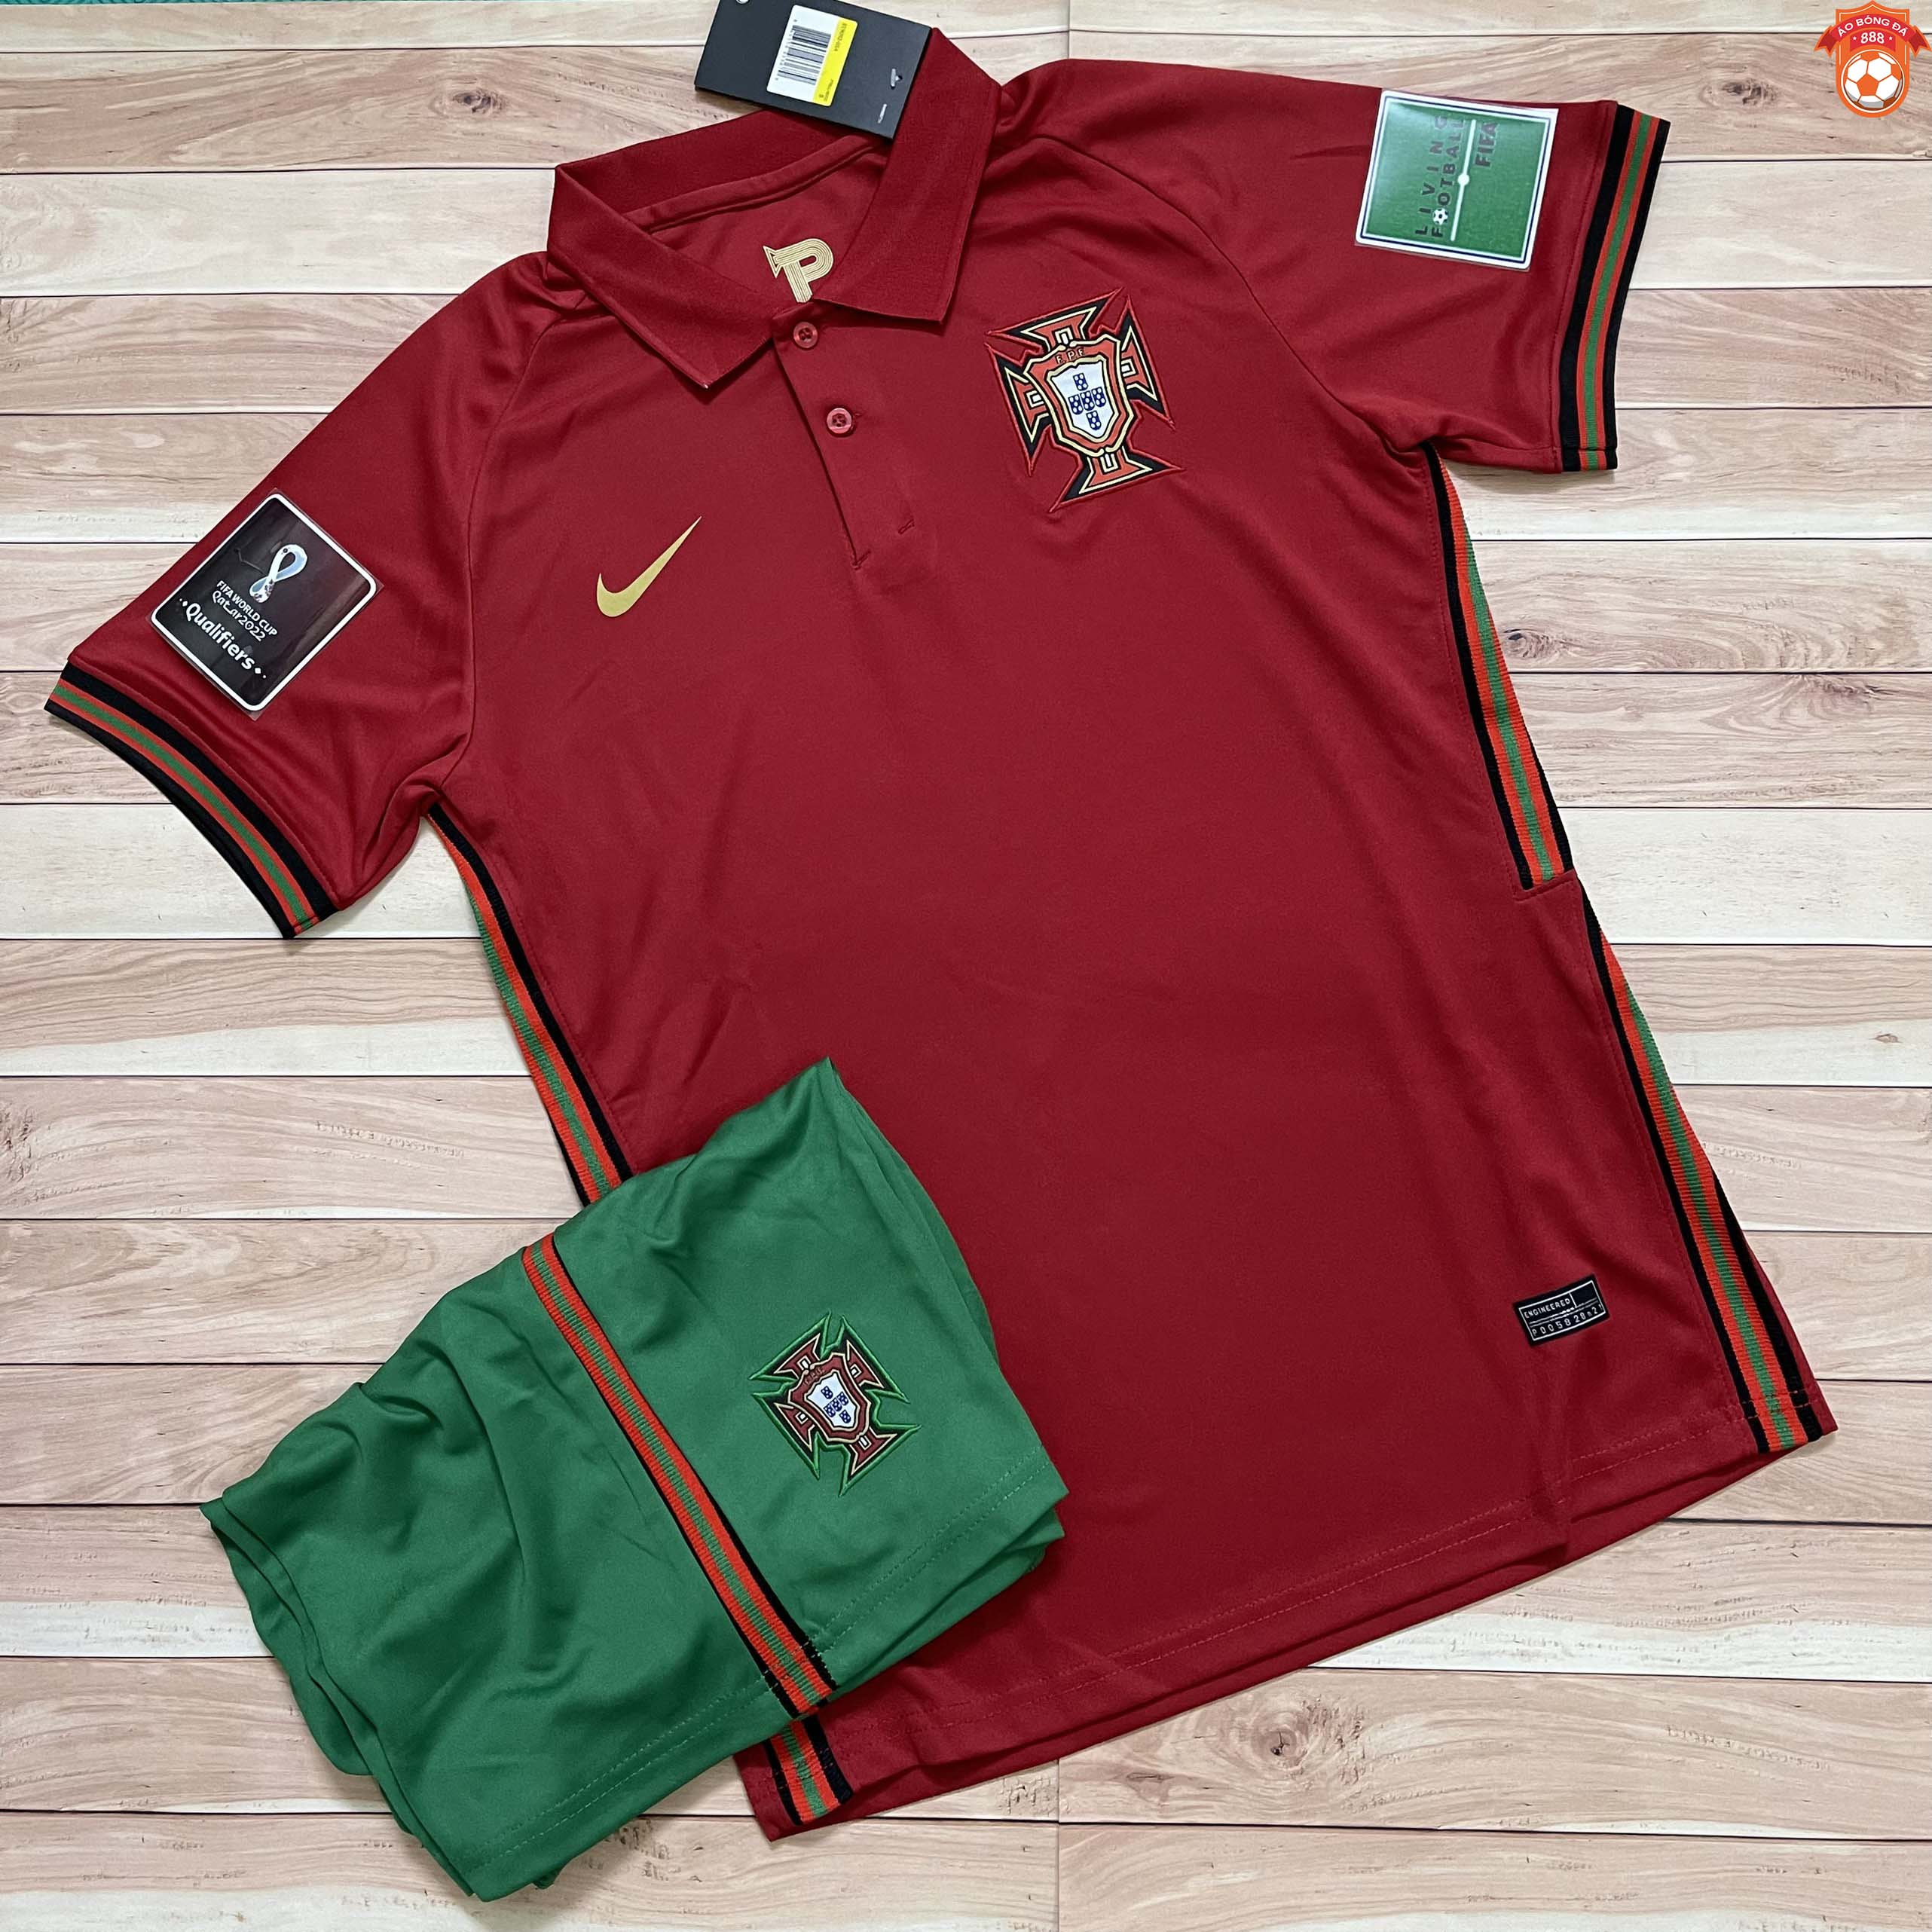 Giảm Giá Áo Bóng Đá Đội Tuyển Bồ Đào Nha Sân Nhà 2021 - Chuẩn Mẫu Thi Đấu - Vải  Polyester Gai Thái - Beecost